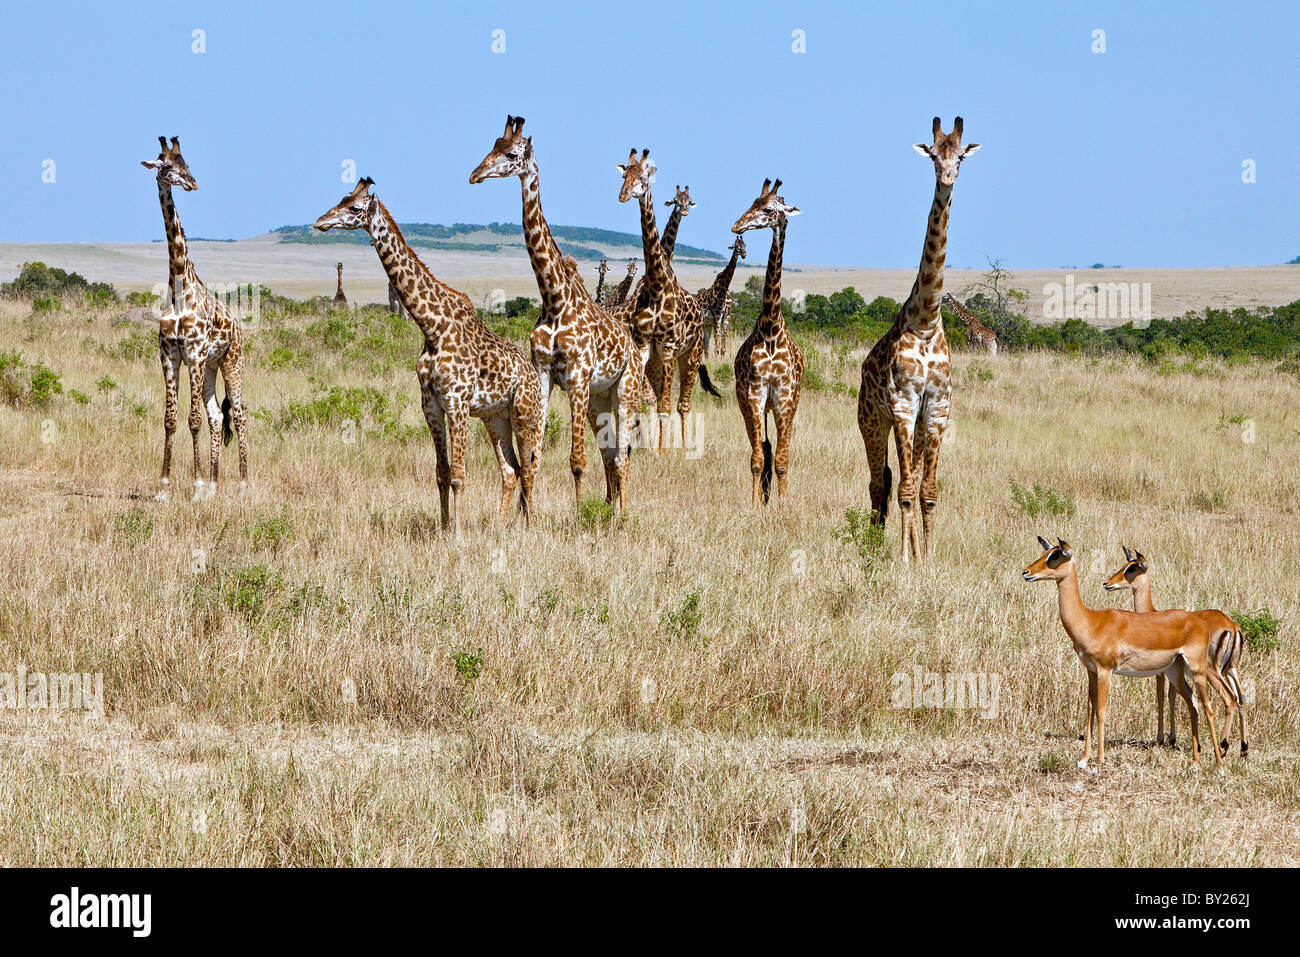 Deux femmes Les impalas sont éclipsées par les girafes Massaï sur les plaines du Masai Mara National Reserve. Banque D'Images